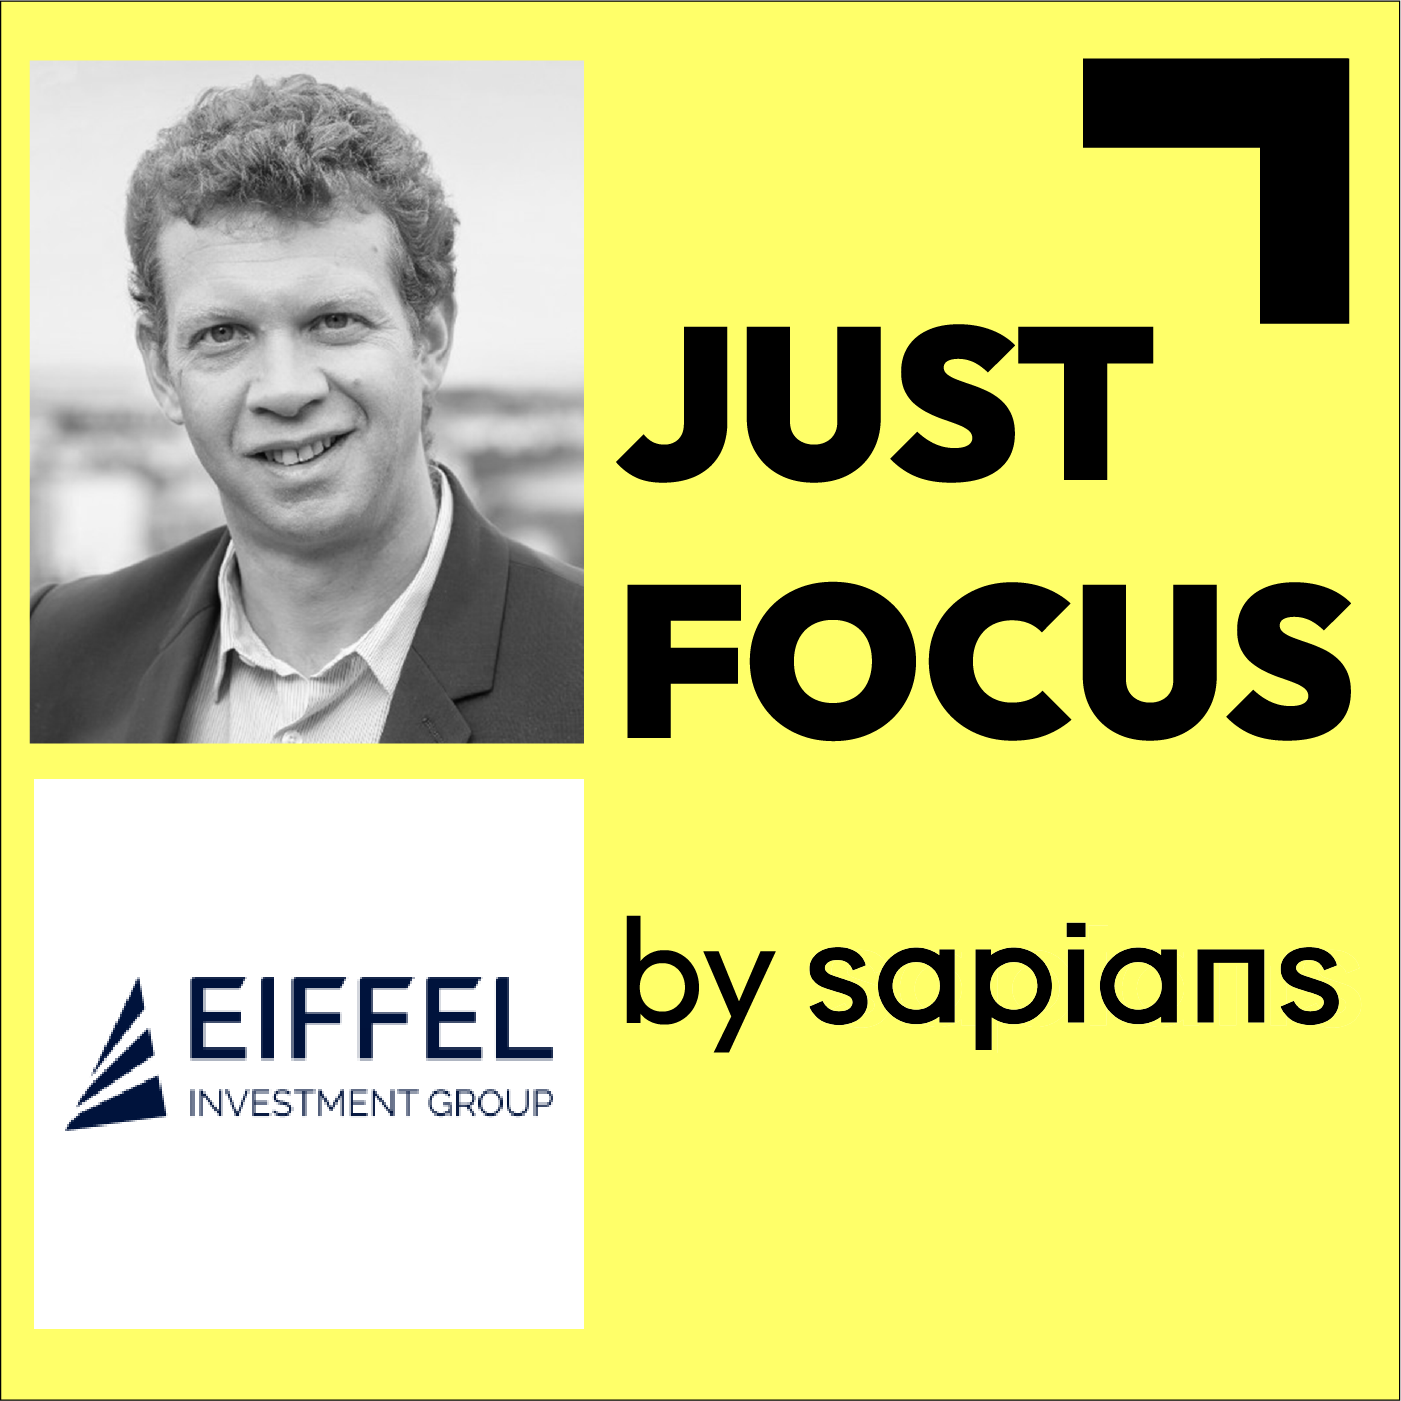 eiffel-investment-group-laurent-coubret-podcast-just-focus-sapians